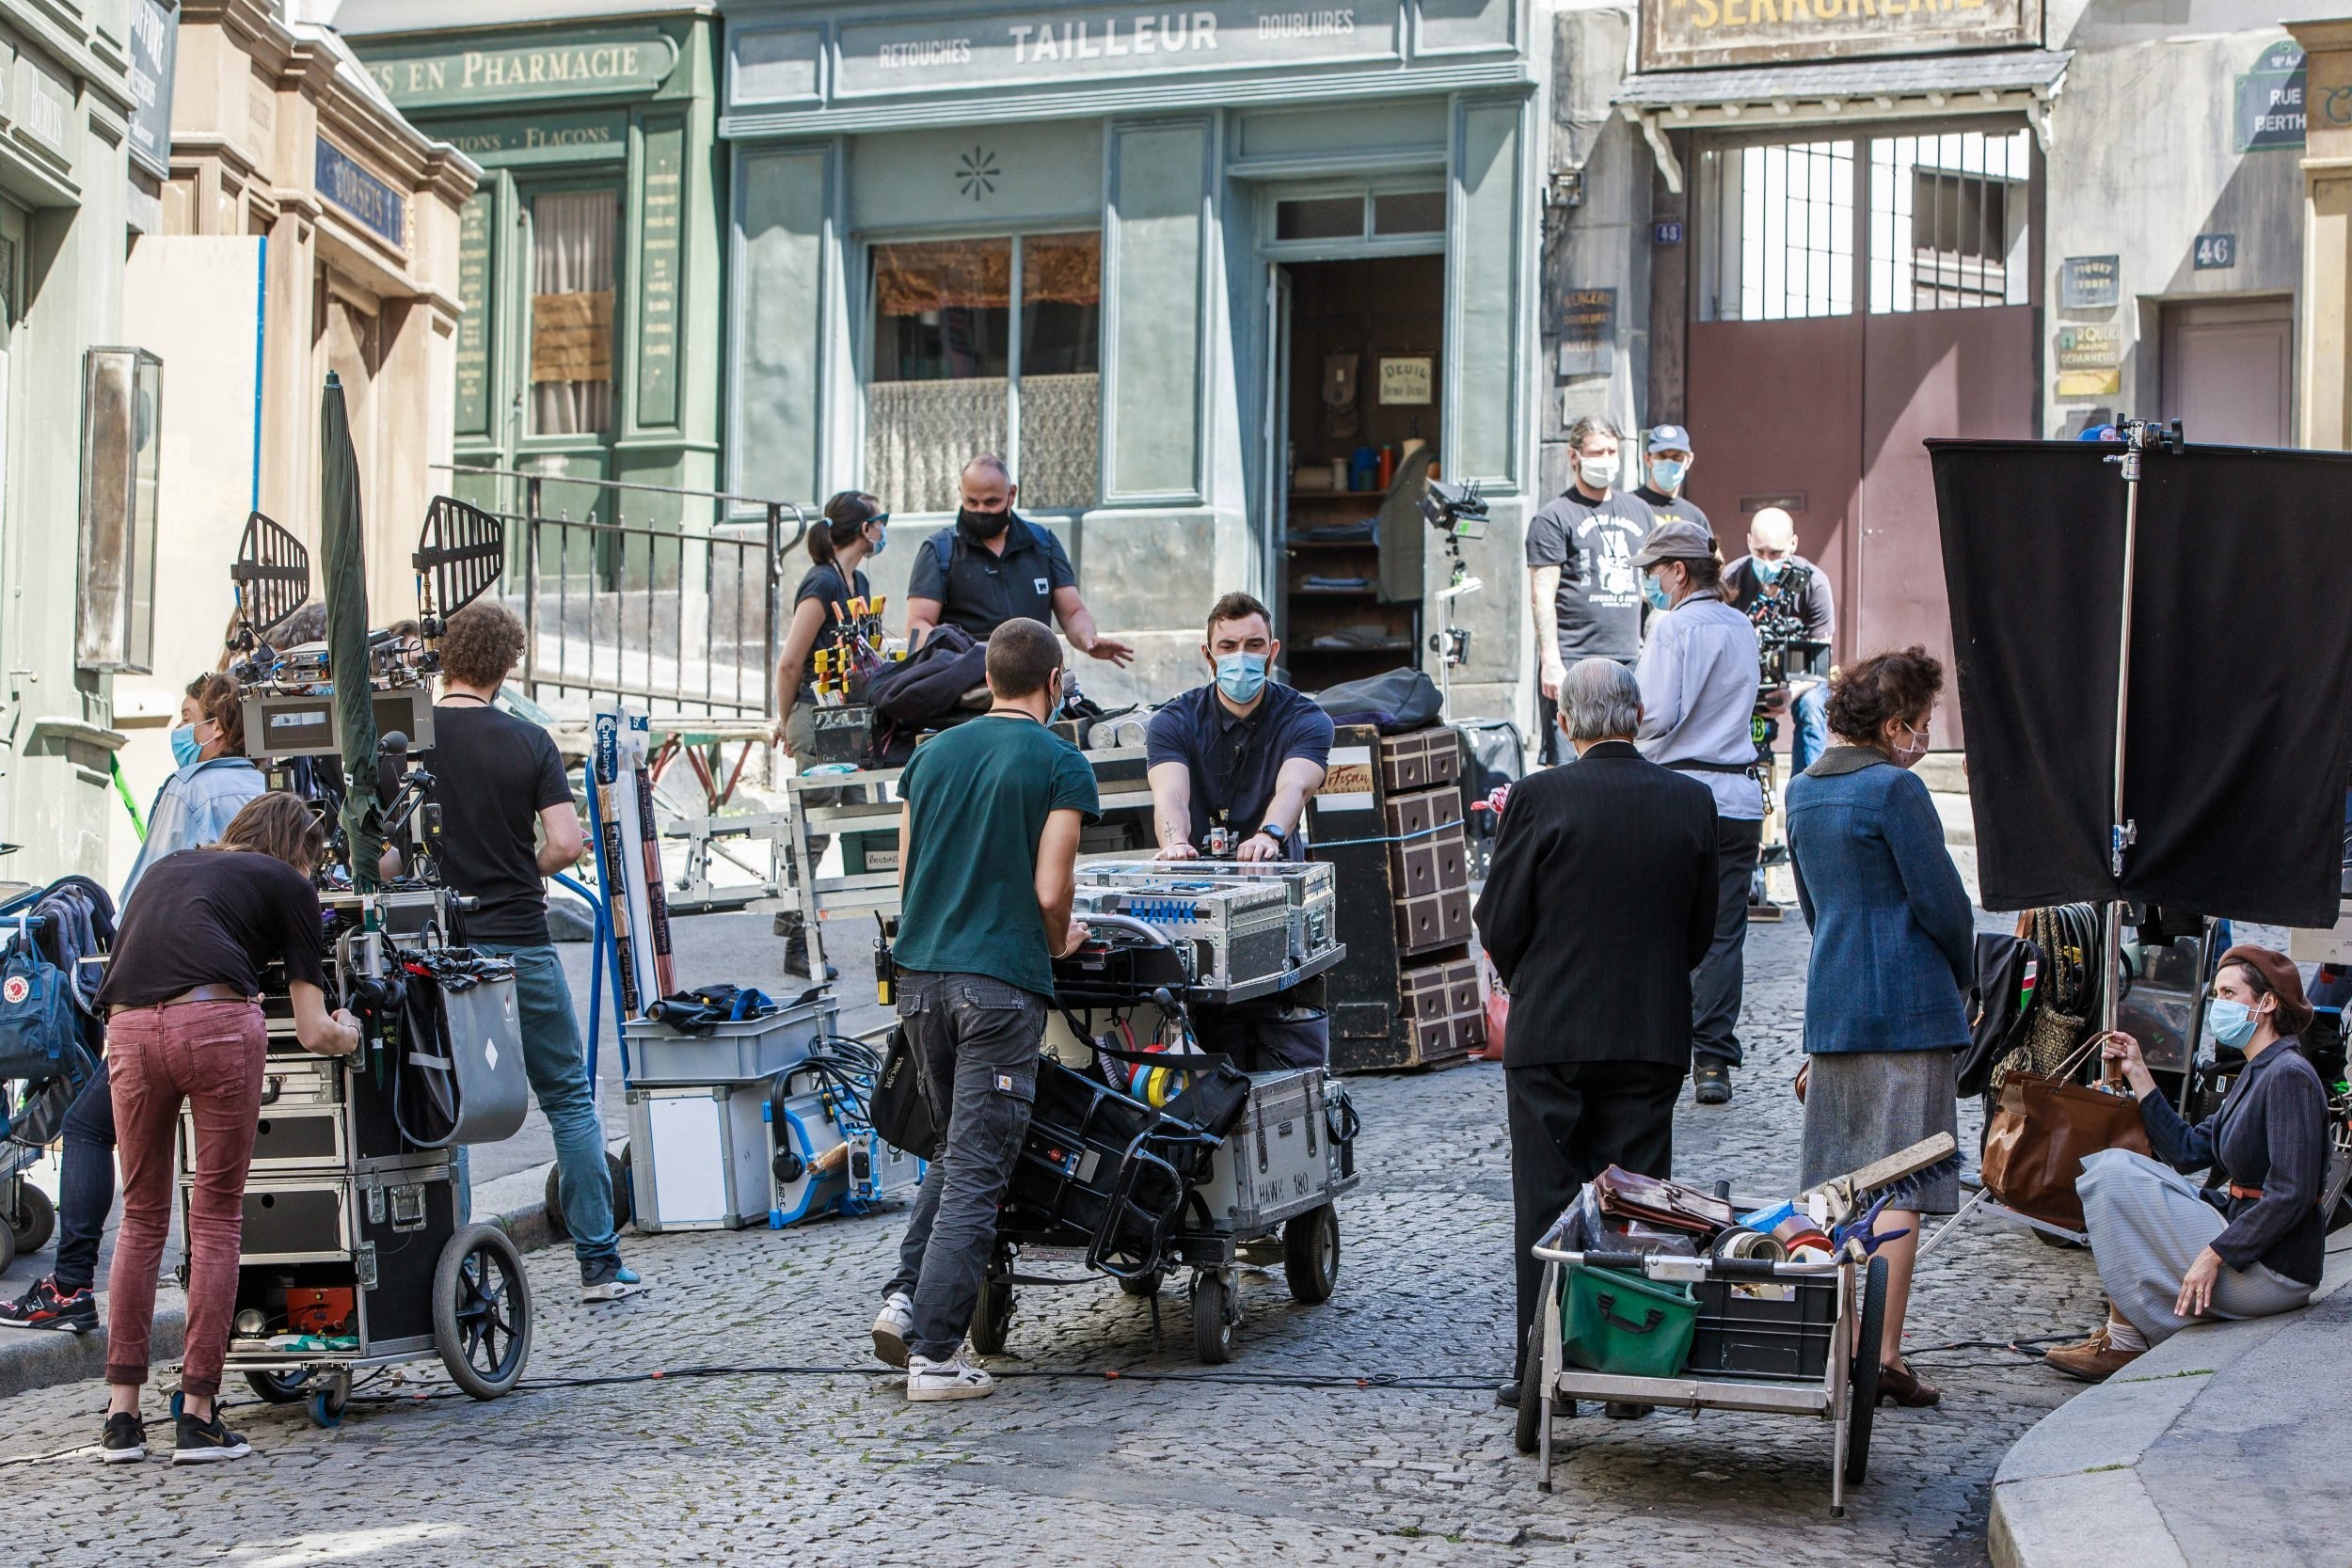 Shooting resumes on film set as lockdown eases in Paris